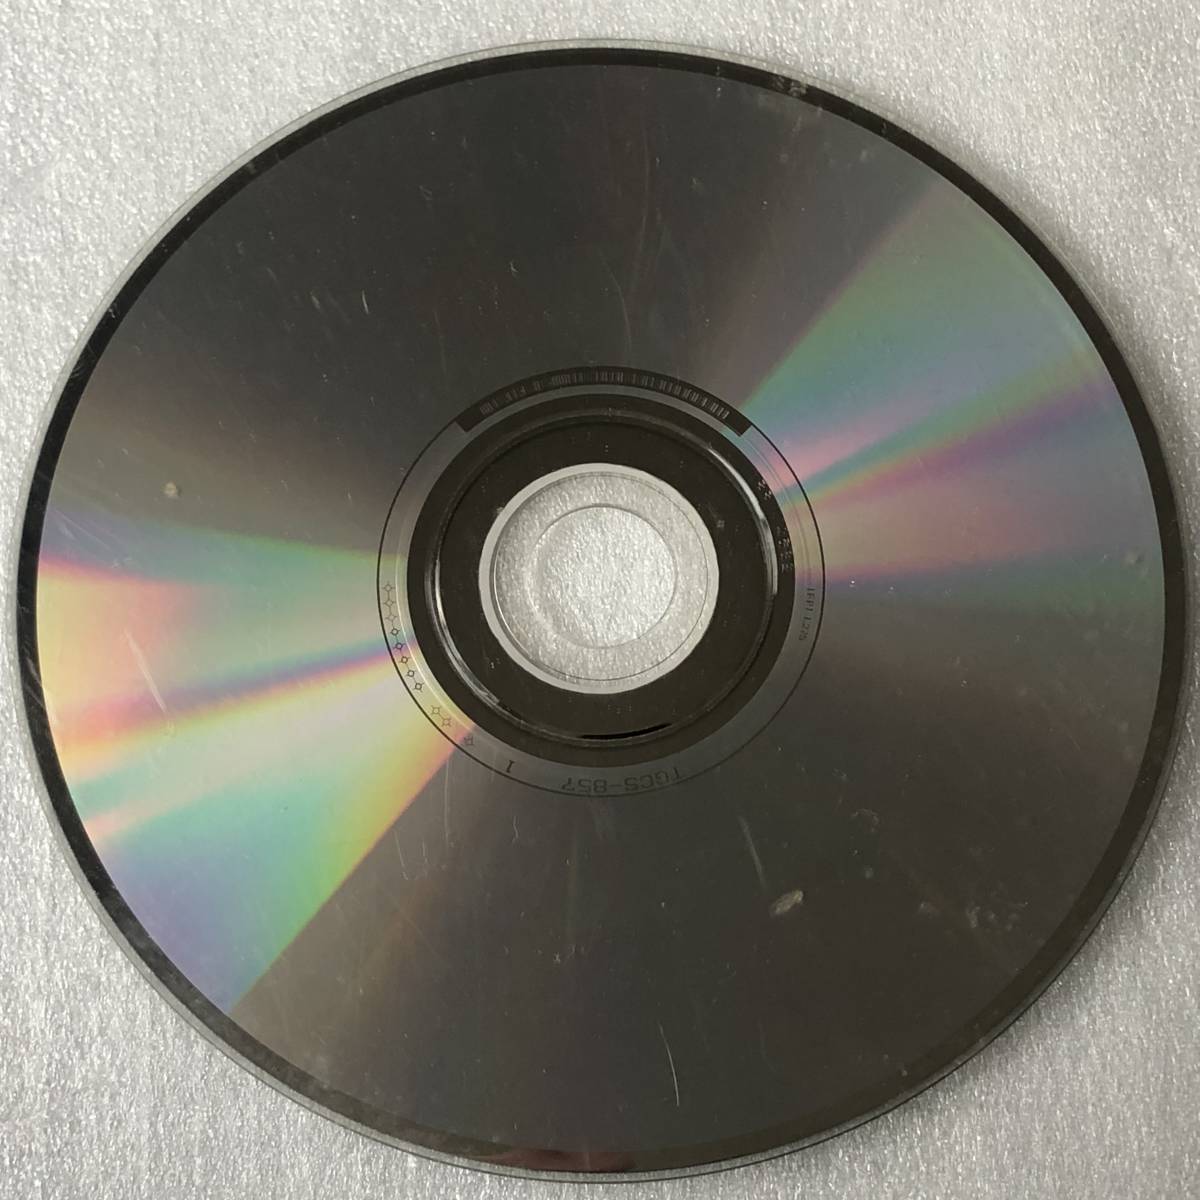 特価CD 管理番号0360_このような傷だらけの品は除外しています。